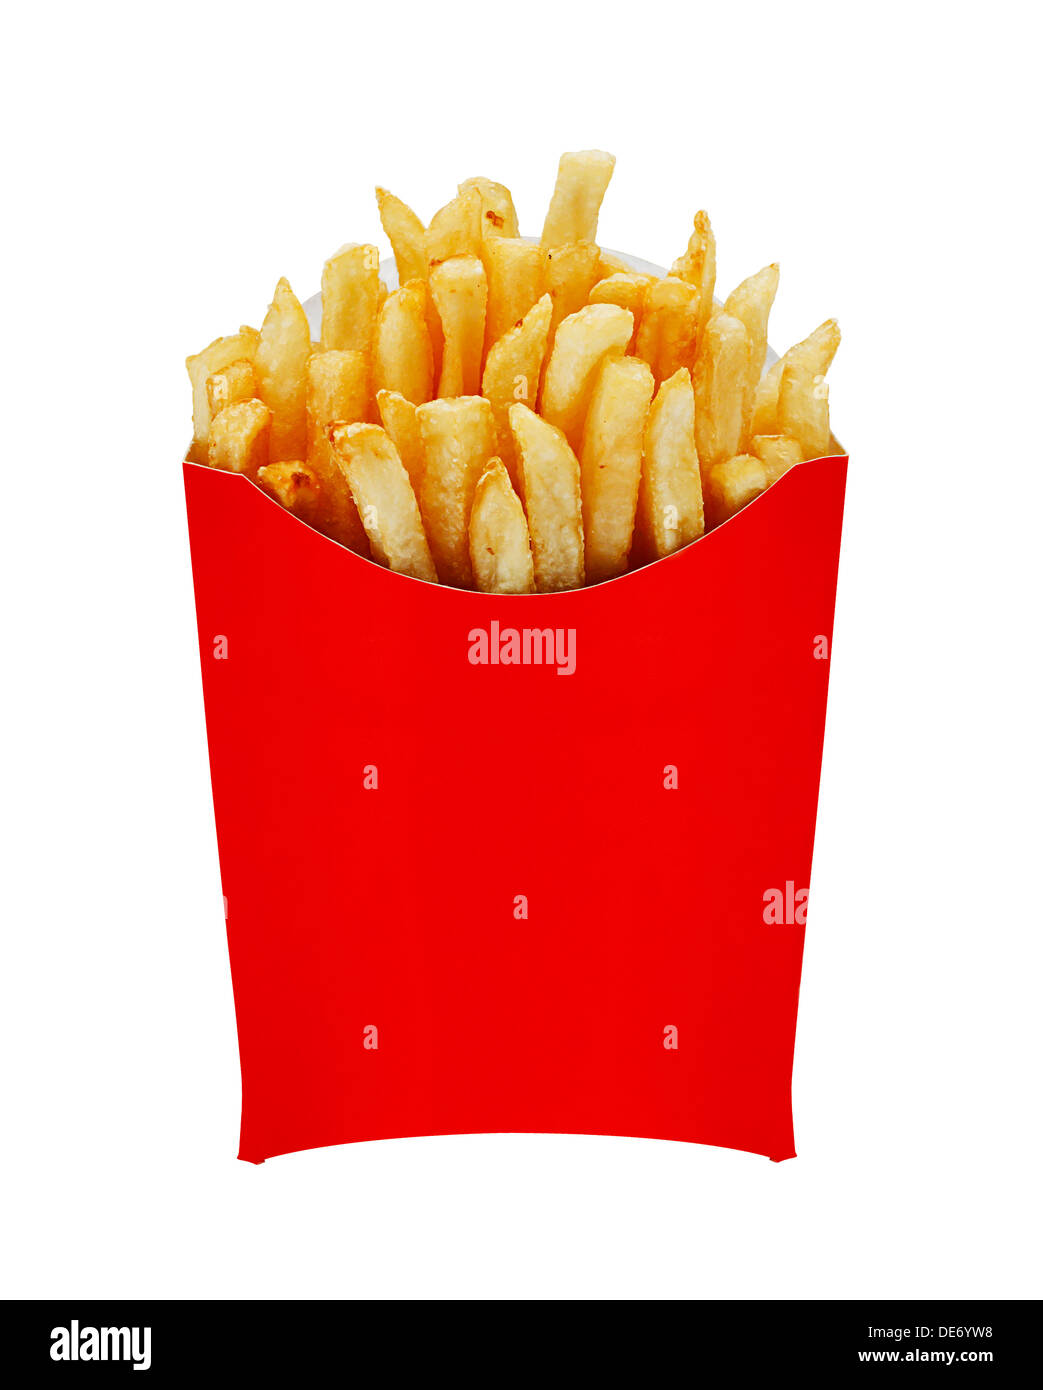 Frites ou chips à l'origine appelé pommes frites et plus récemment nommé freedom fries en Amérique dans un carton rouge servant Banque D'Images